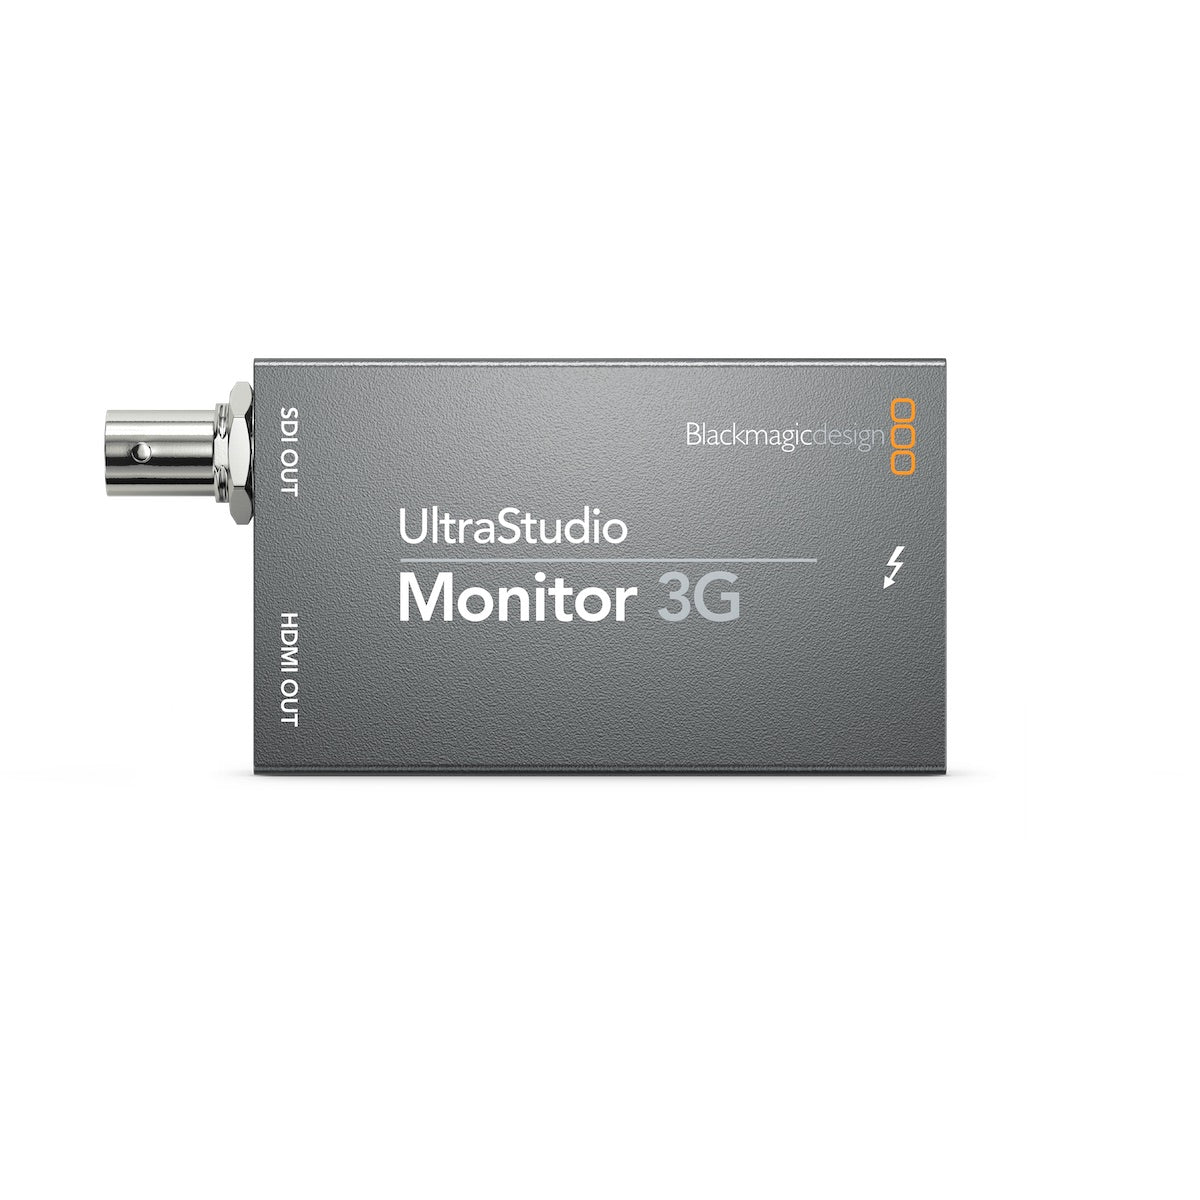 Blackmagic Design UltraStudio Monitor 3G - Thunderbolt 3 Adapter